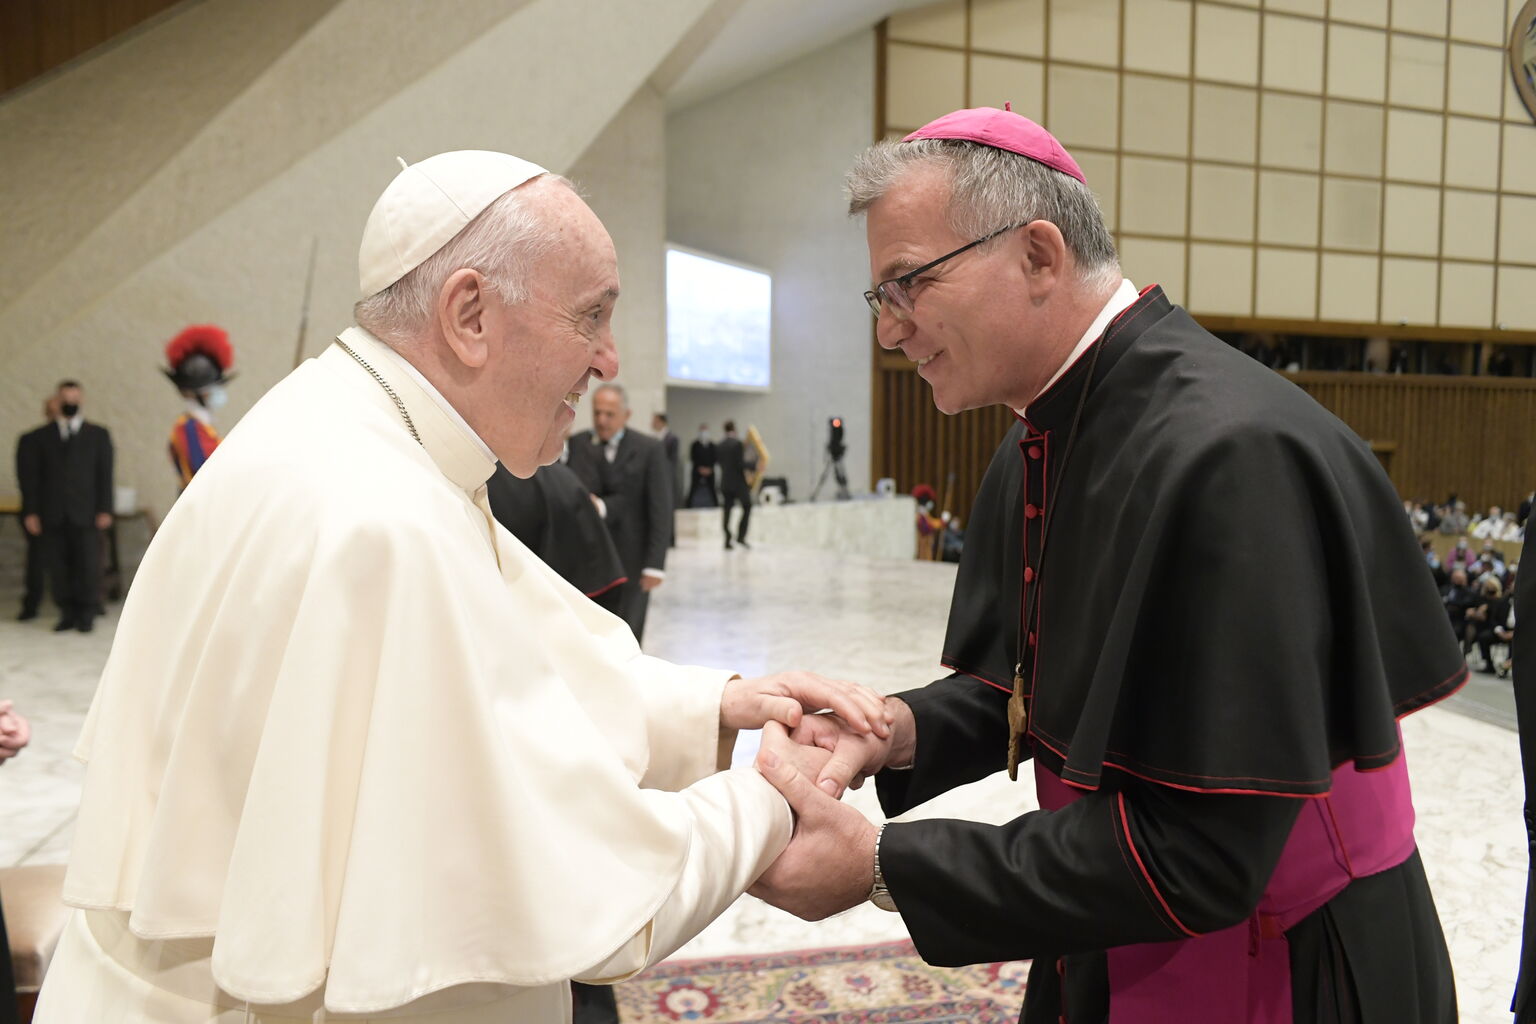 Papst Franziskus begrüsst einen Bischof.